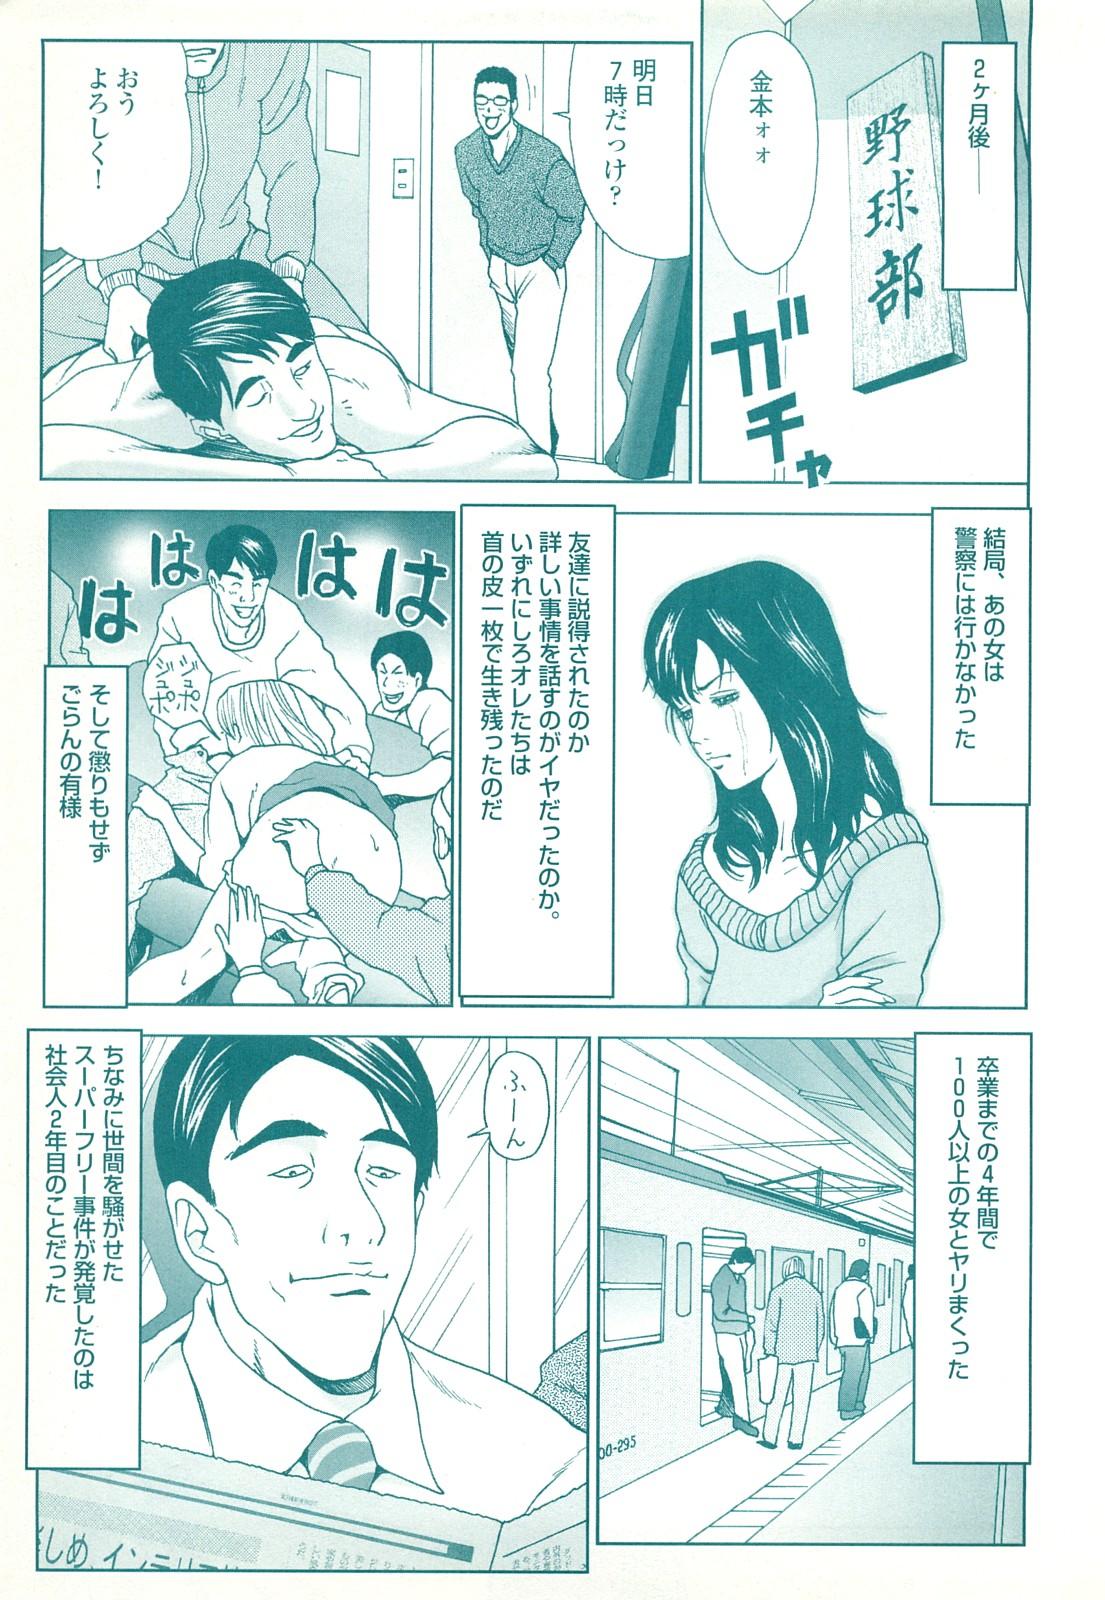 コミック裏モノJAPAN Vol.18 今井のりたつスペシャル号 158